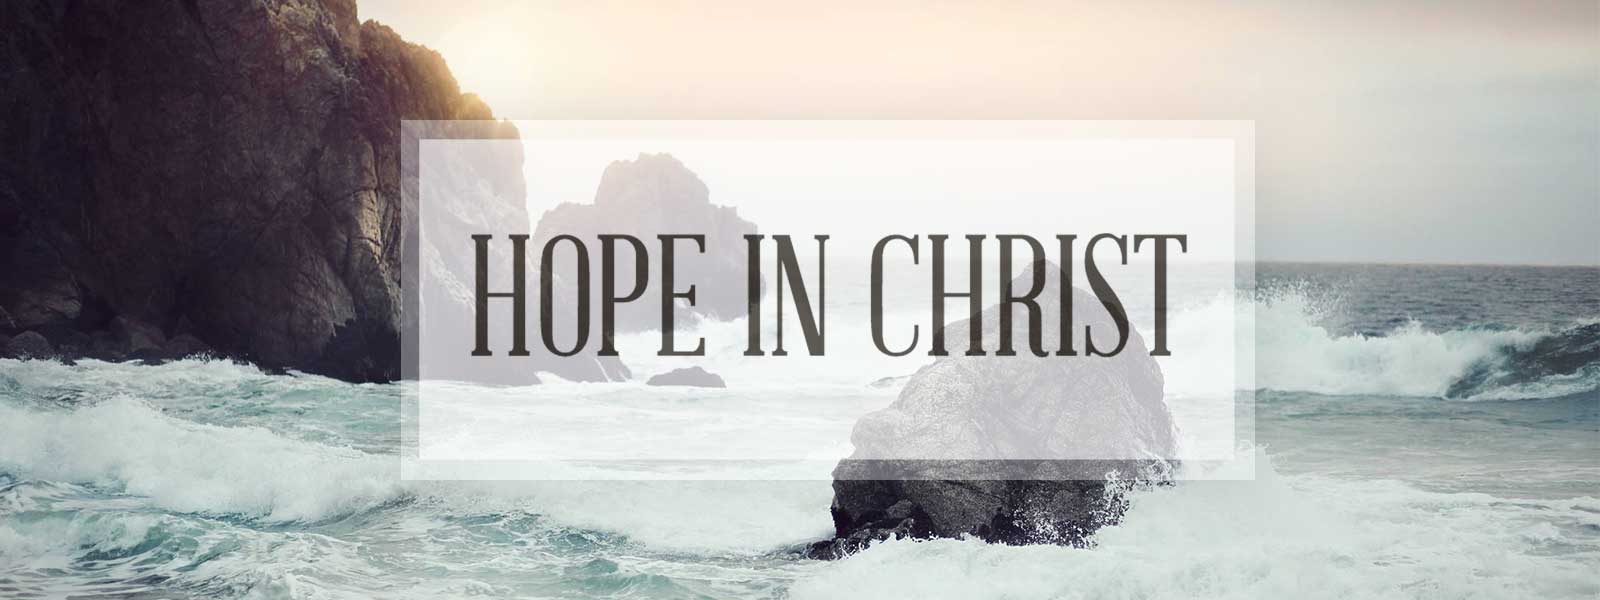 Hope in Christ – Church Sermon Series Ideas